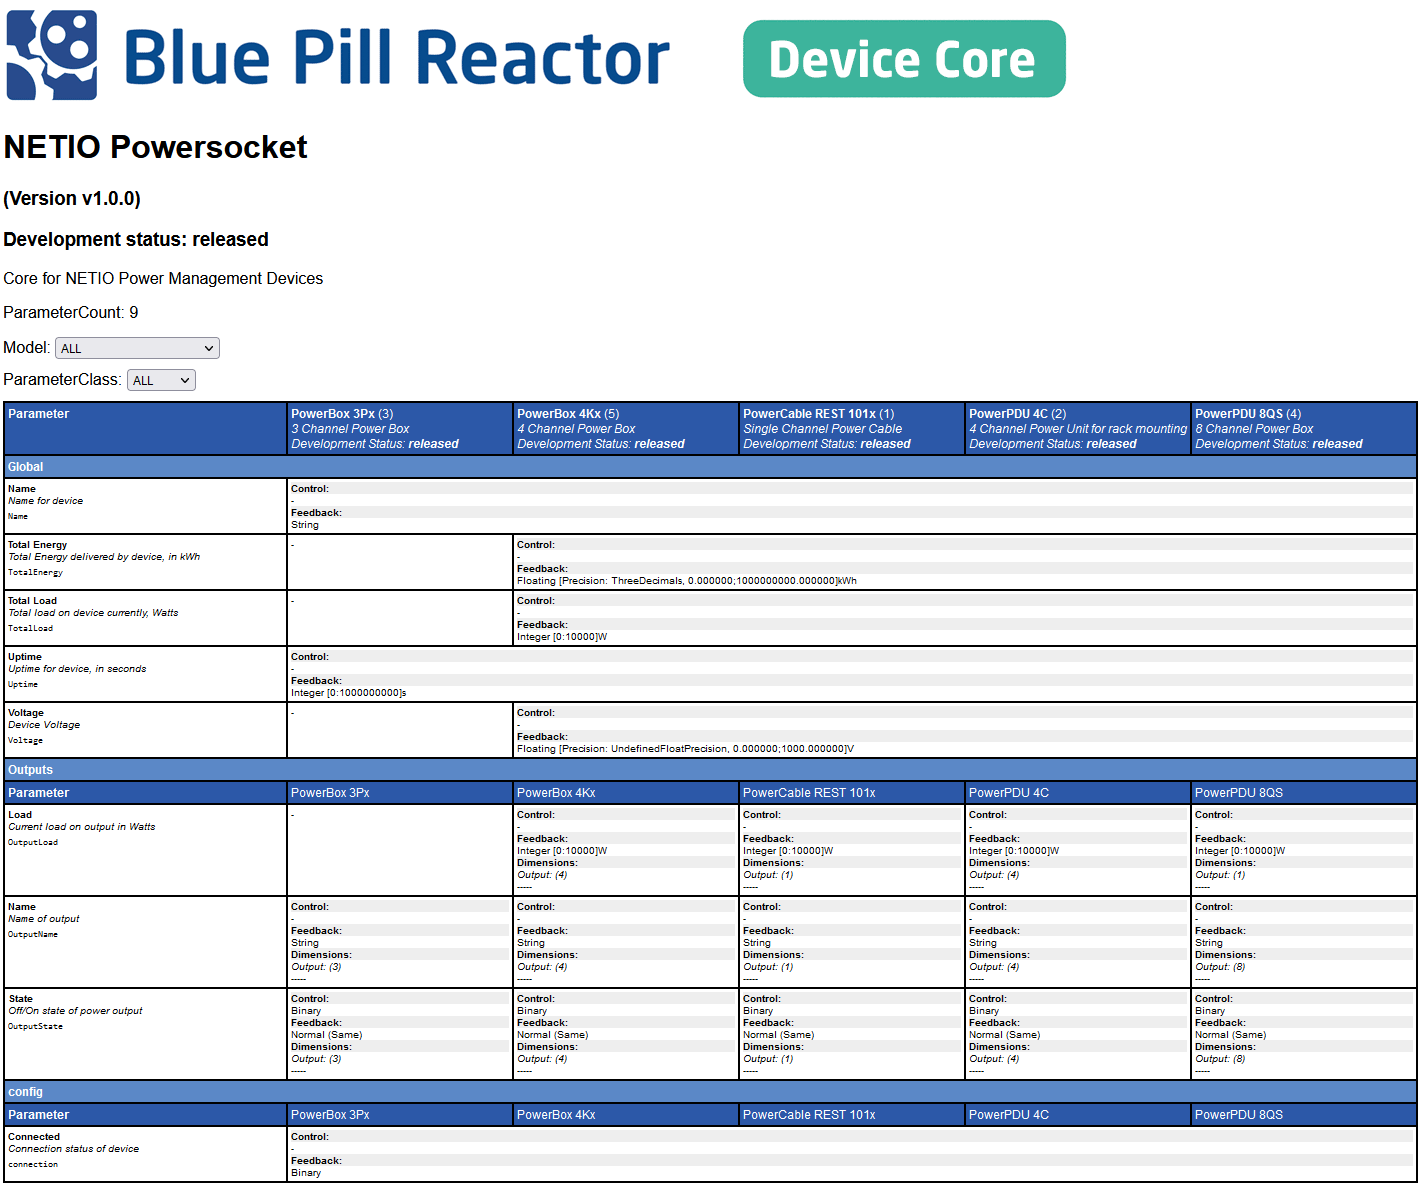 AN69-Skaarhoj_Blue-Pill-Reactor-NETIO-devices-list 1